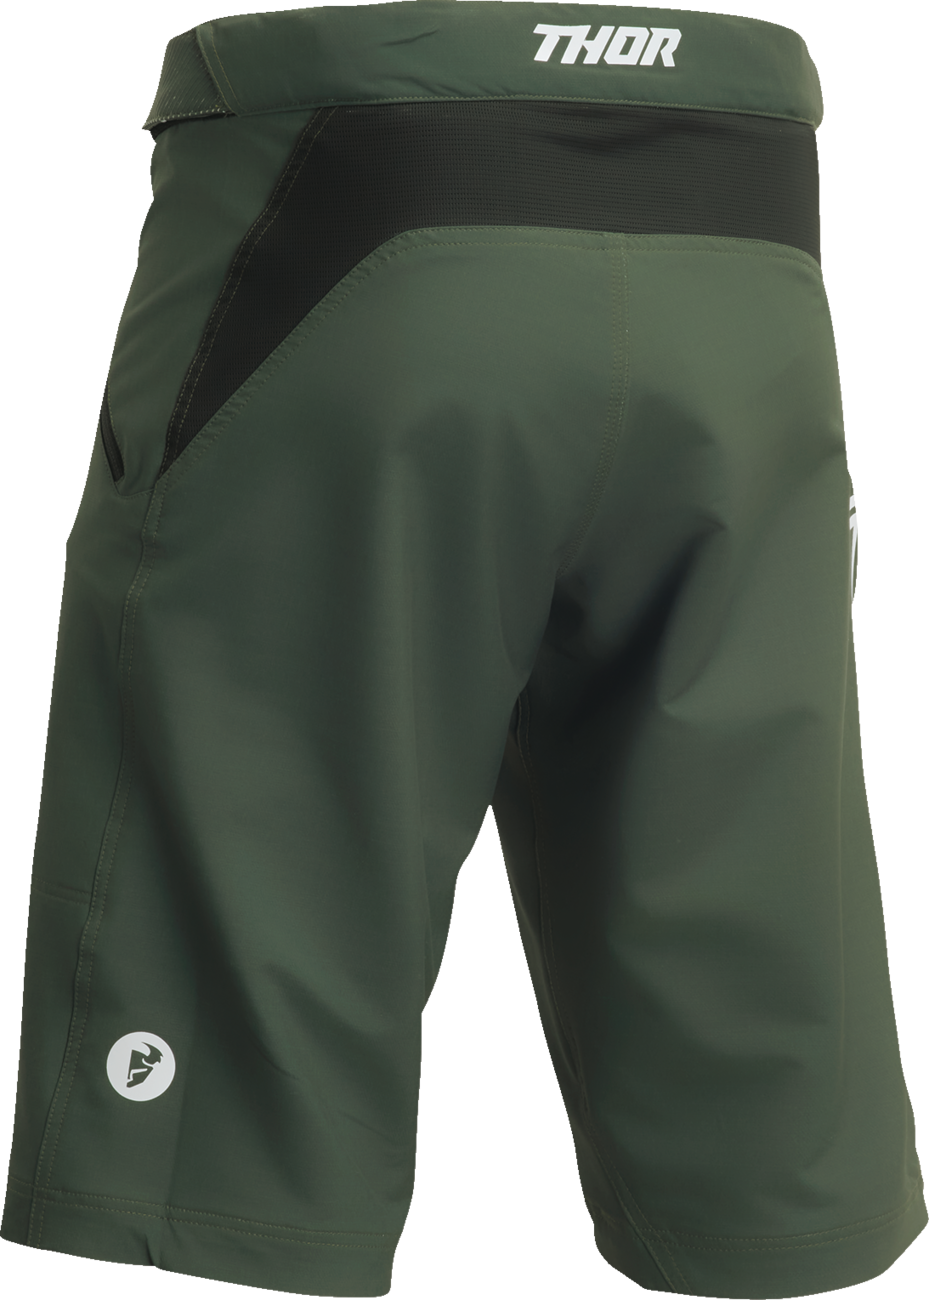 Pantalones cortos THOR Intense - Verde bosque - US 34 5001-0291 